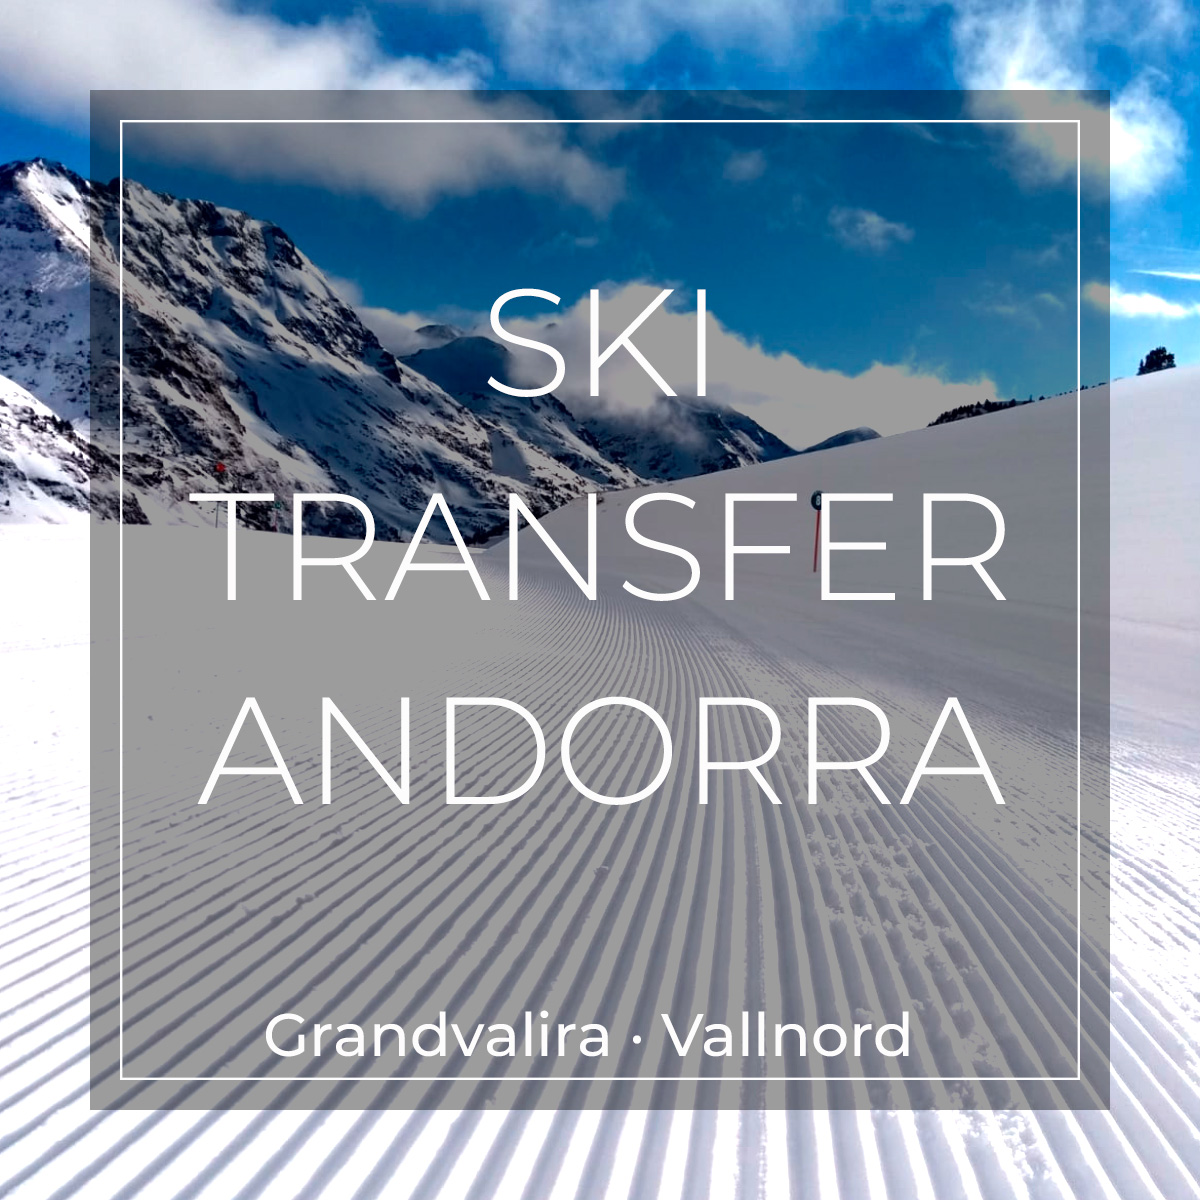 skitransfer-andorra.jpg